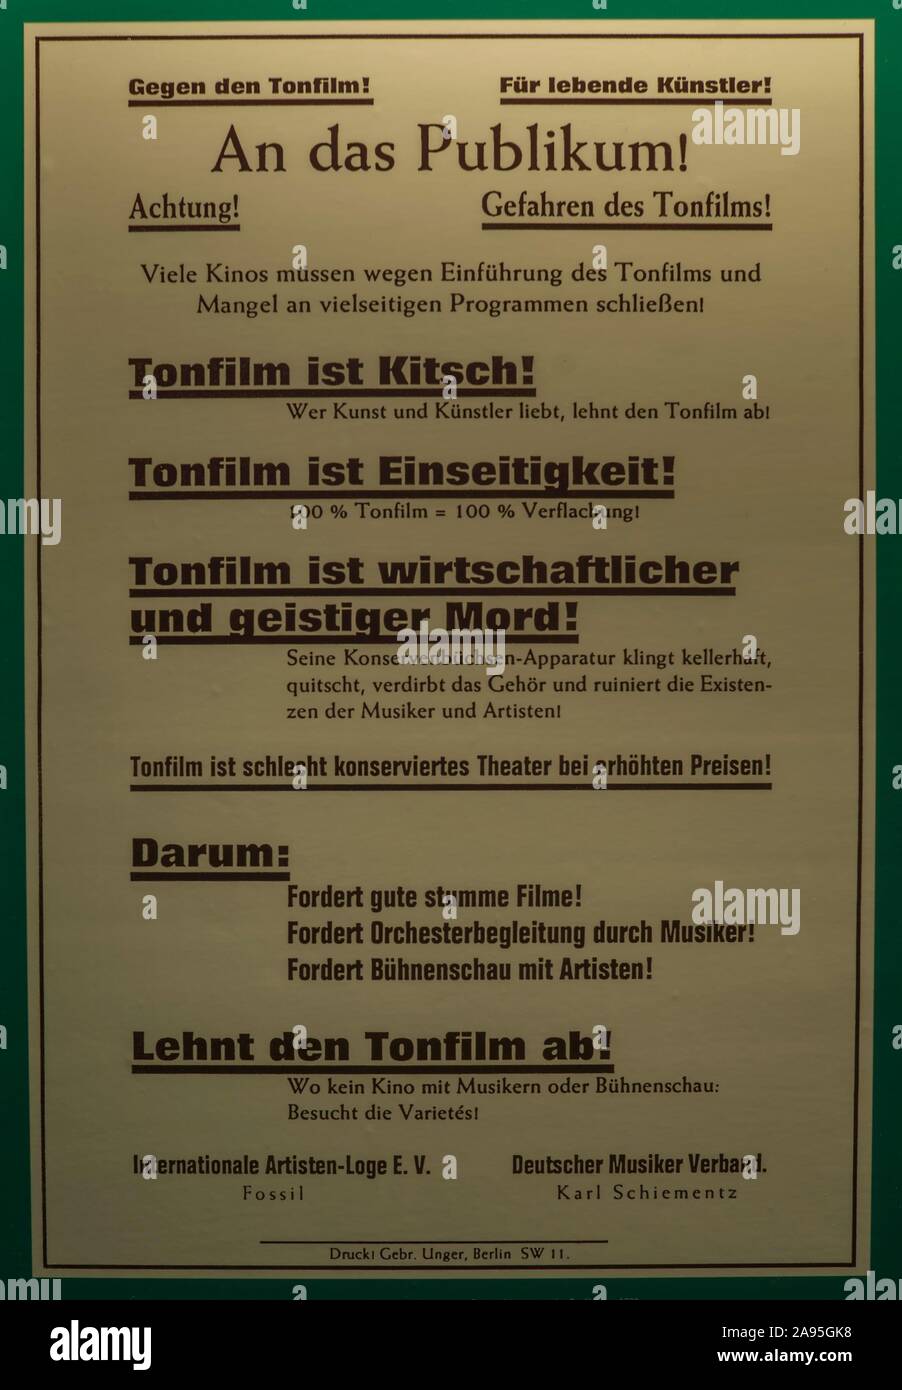 L'affiche de protestation contre le premier film sonore, Musée de la culture industrielle, Nuremberg, Middle Franconia, Bavaria, Germany Banque D'Images